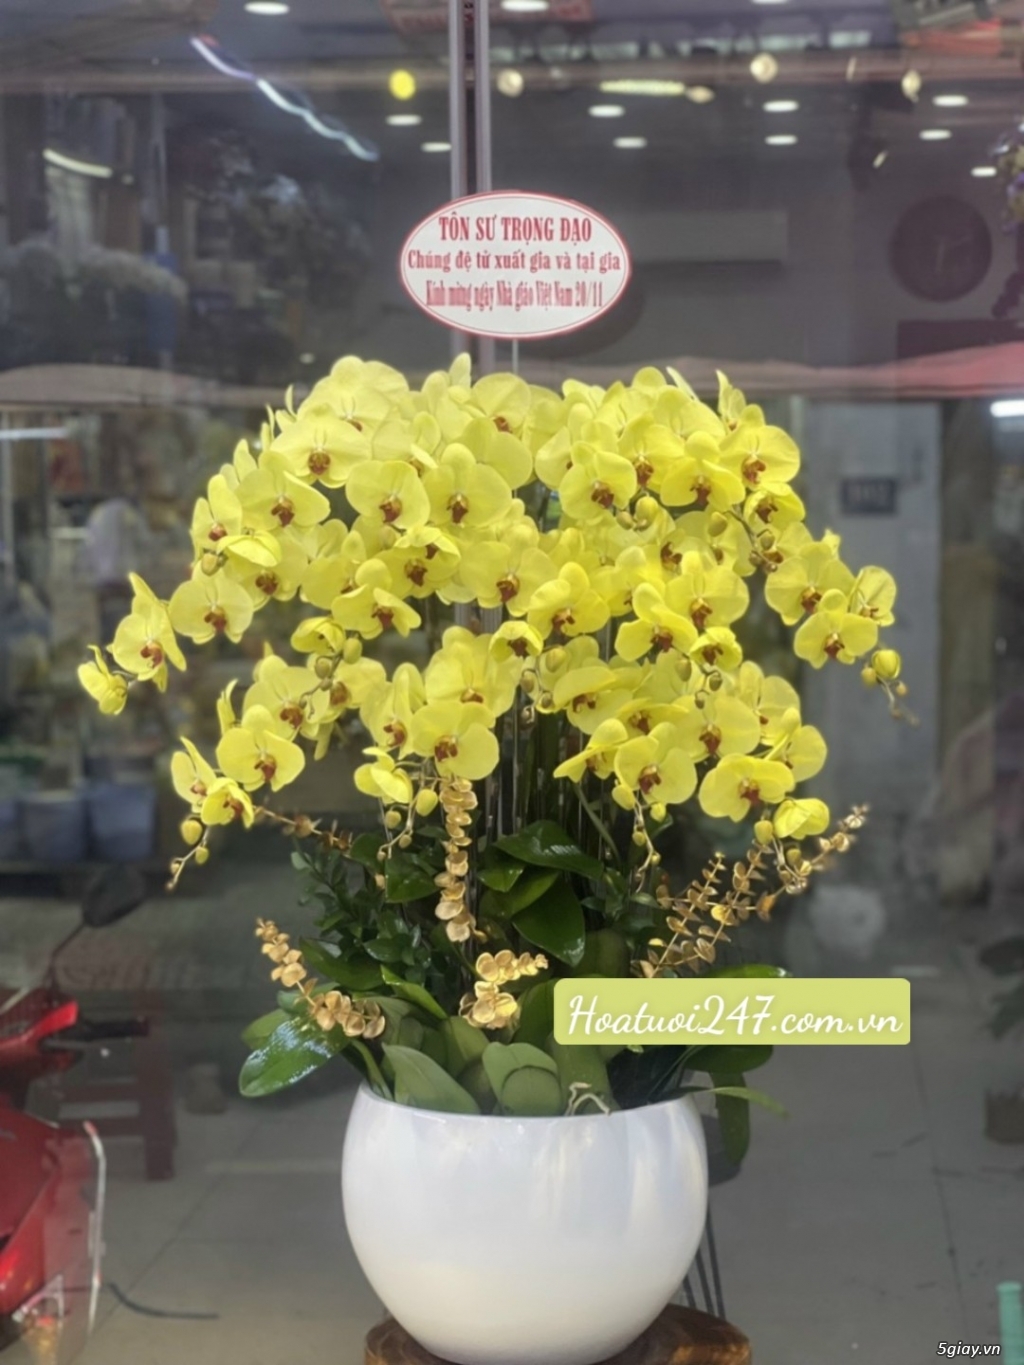 Shop hoa 247 chuyên bán hoa lan hồ điệp cao cấp chất lượng nhất TPHCM - 13